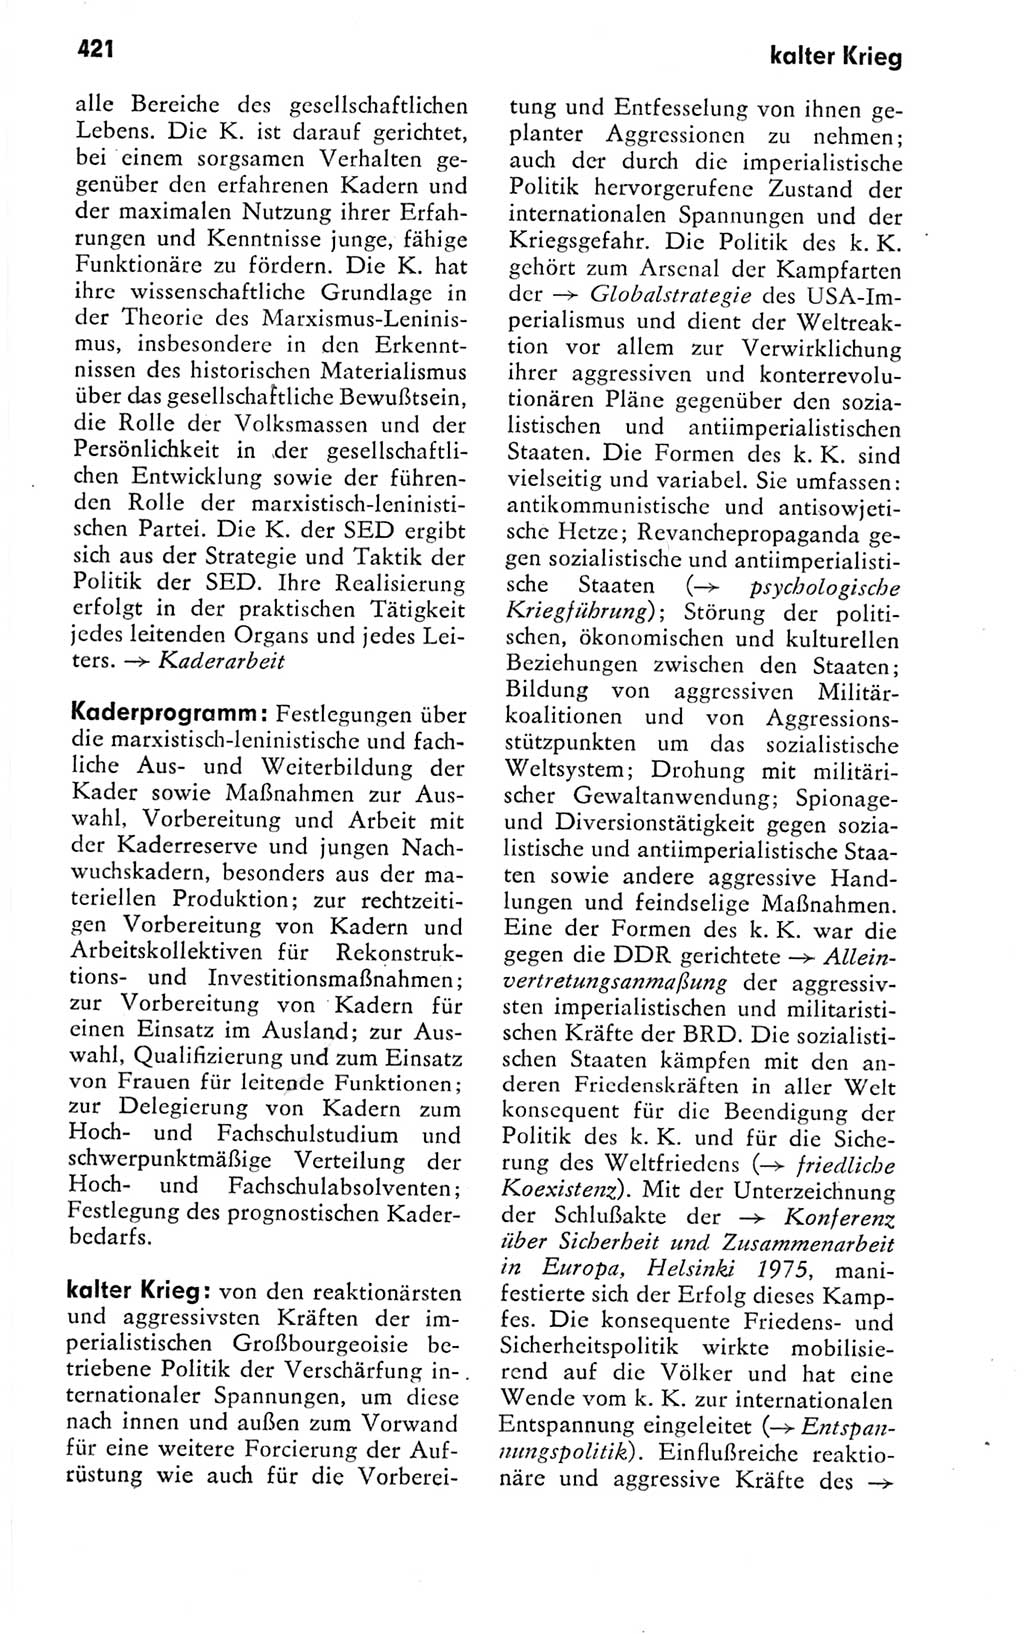 Kleines politisches Wörterbuch [Deutsche Demokratische Republik (DDR)] 1978, Seite 421 (Kl. pol. Wb. DDR 1978, S. 421)